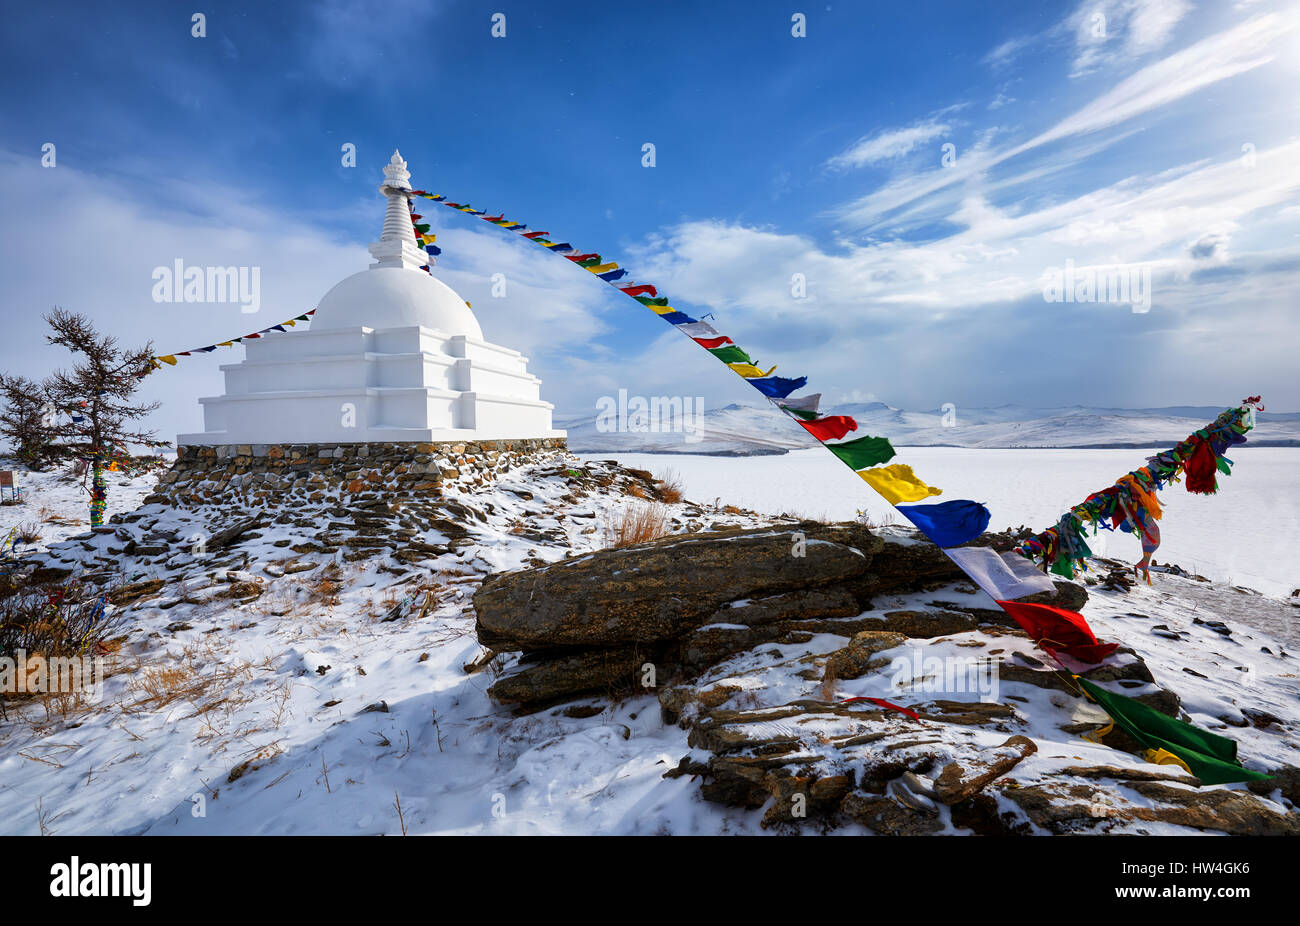 L'Illumination Stupa - un lieu de méditation sur une île inhabitée sur le Lac Baïkal. Région d'Irkoutsk. La Russie Banque D'Images